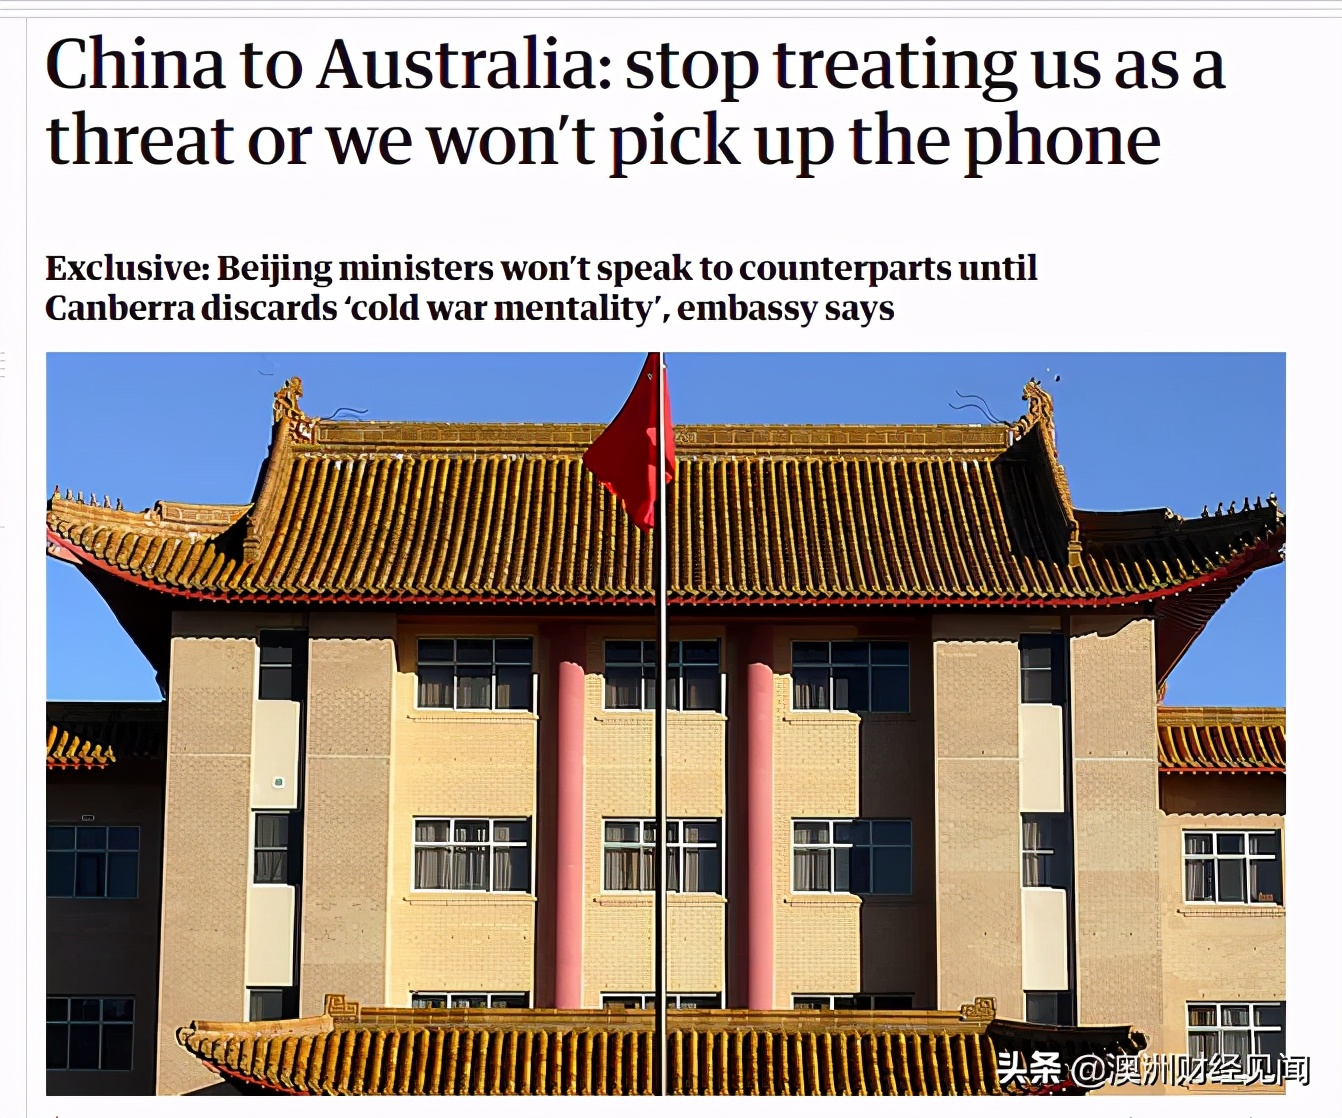 "停止视中国为威胁，否则不接电话"